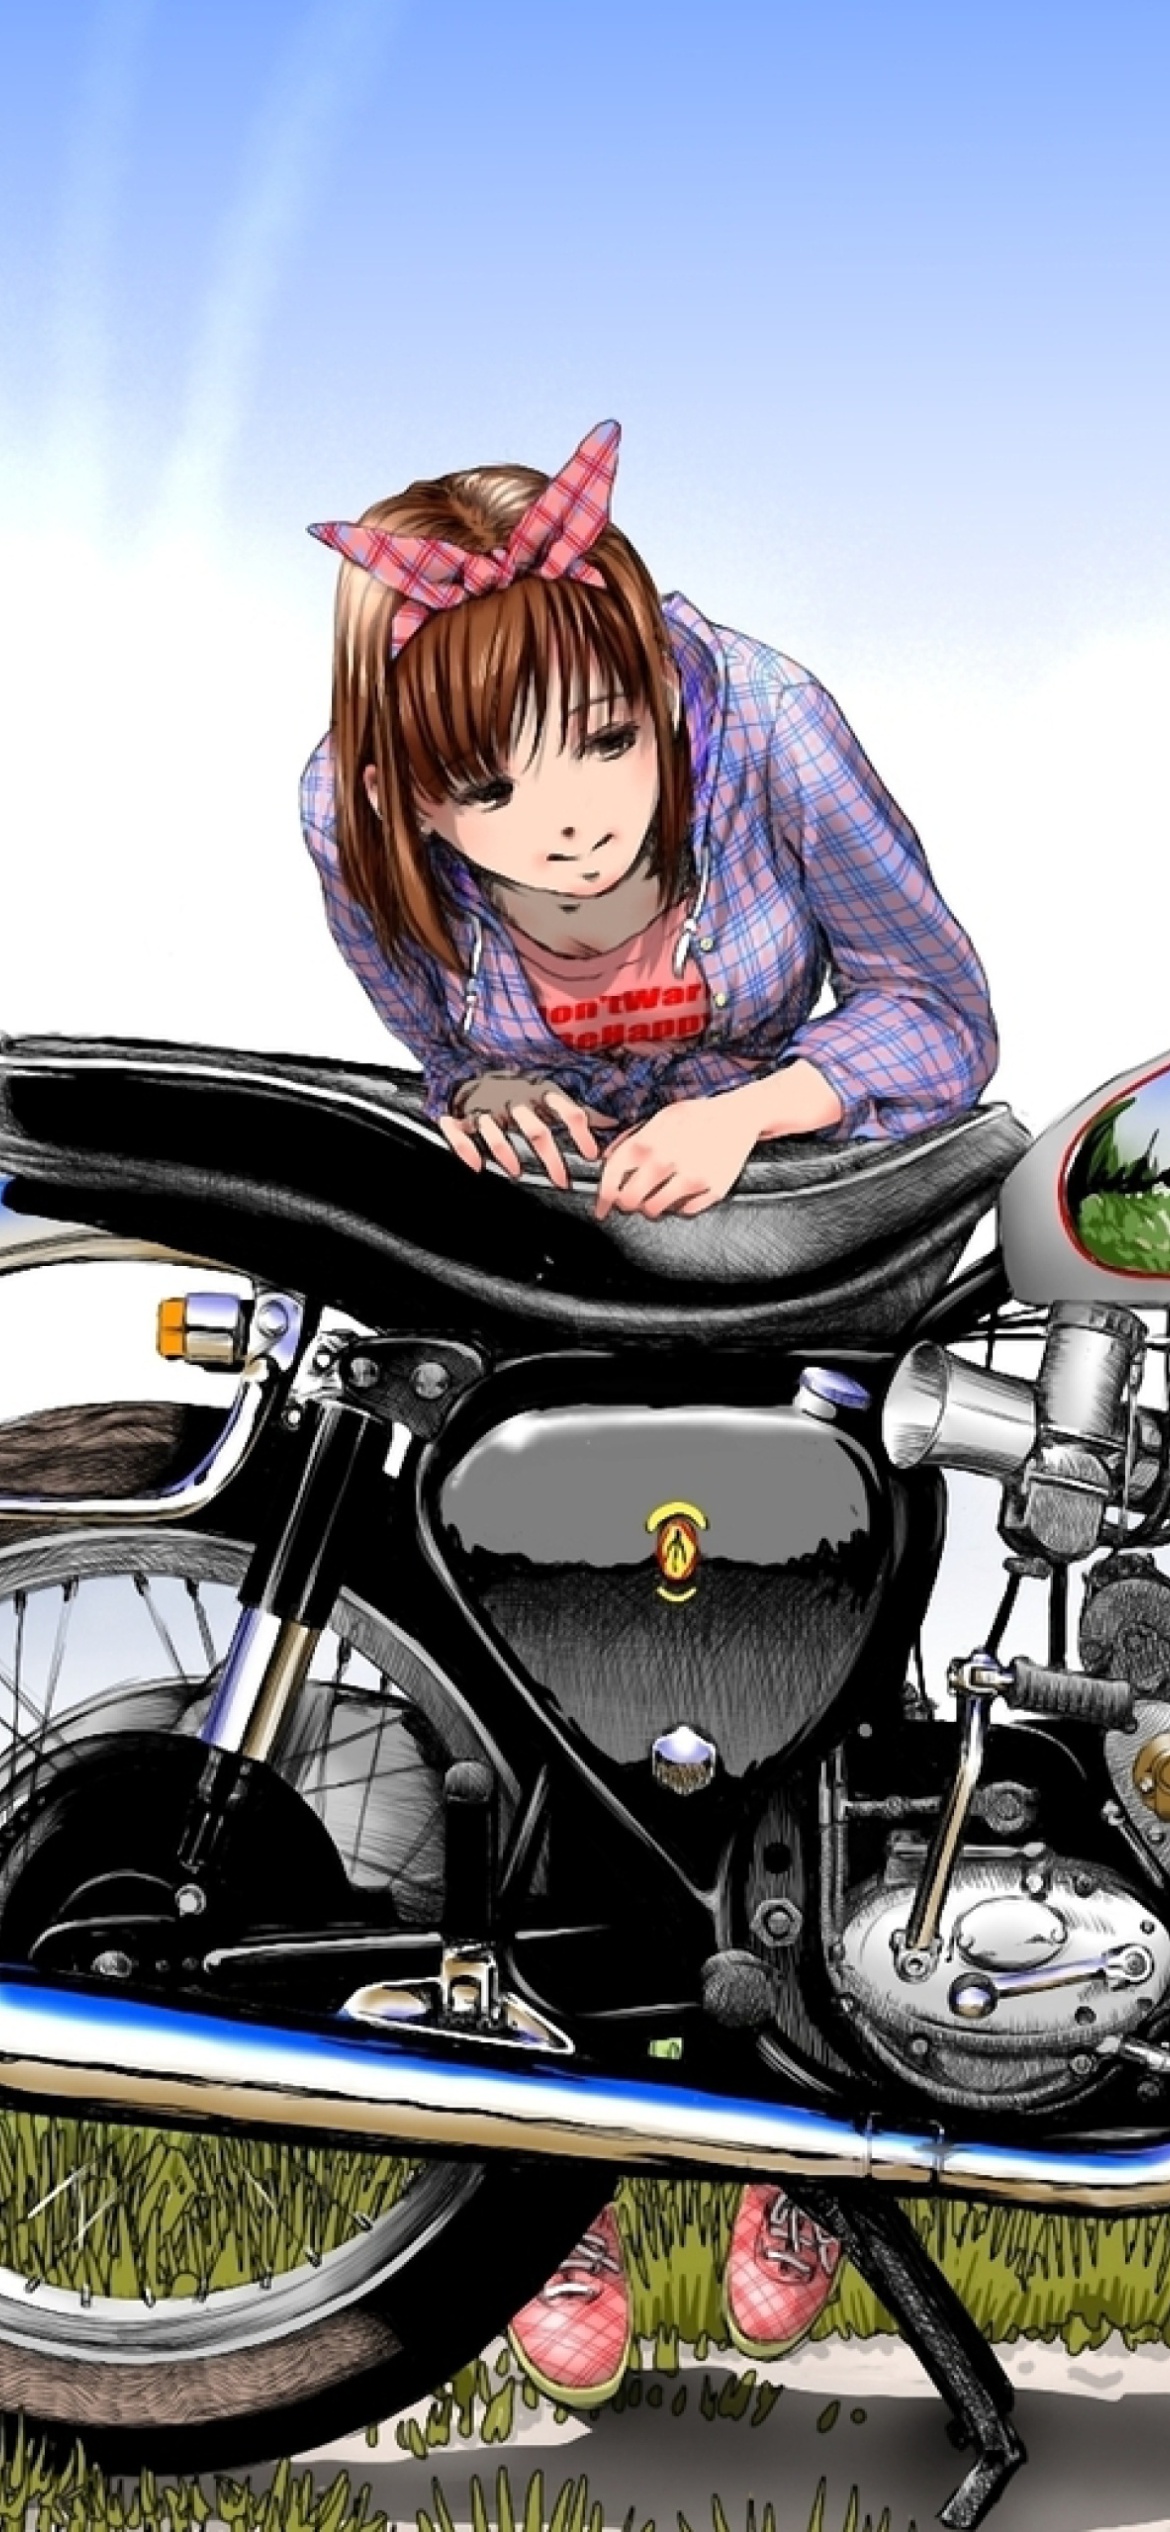 Обои Anime Girl with Bike 1170x2532